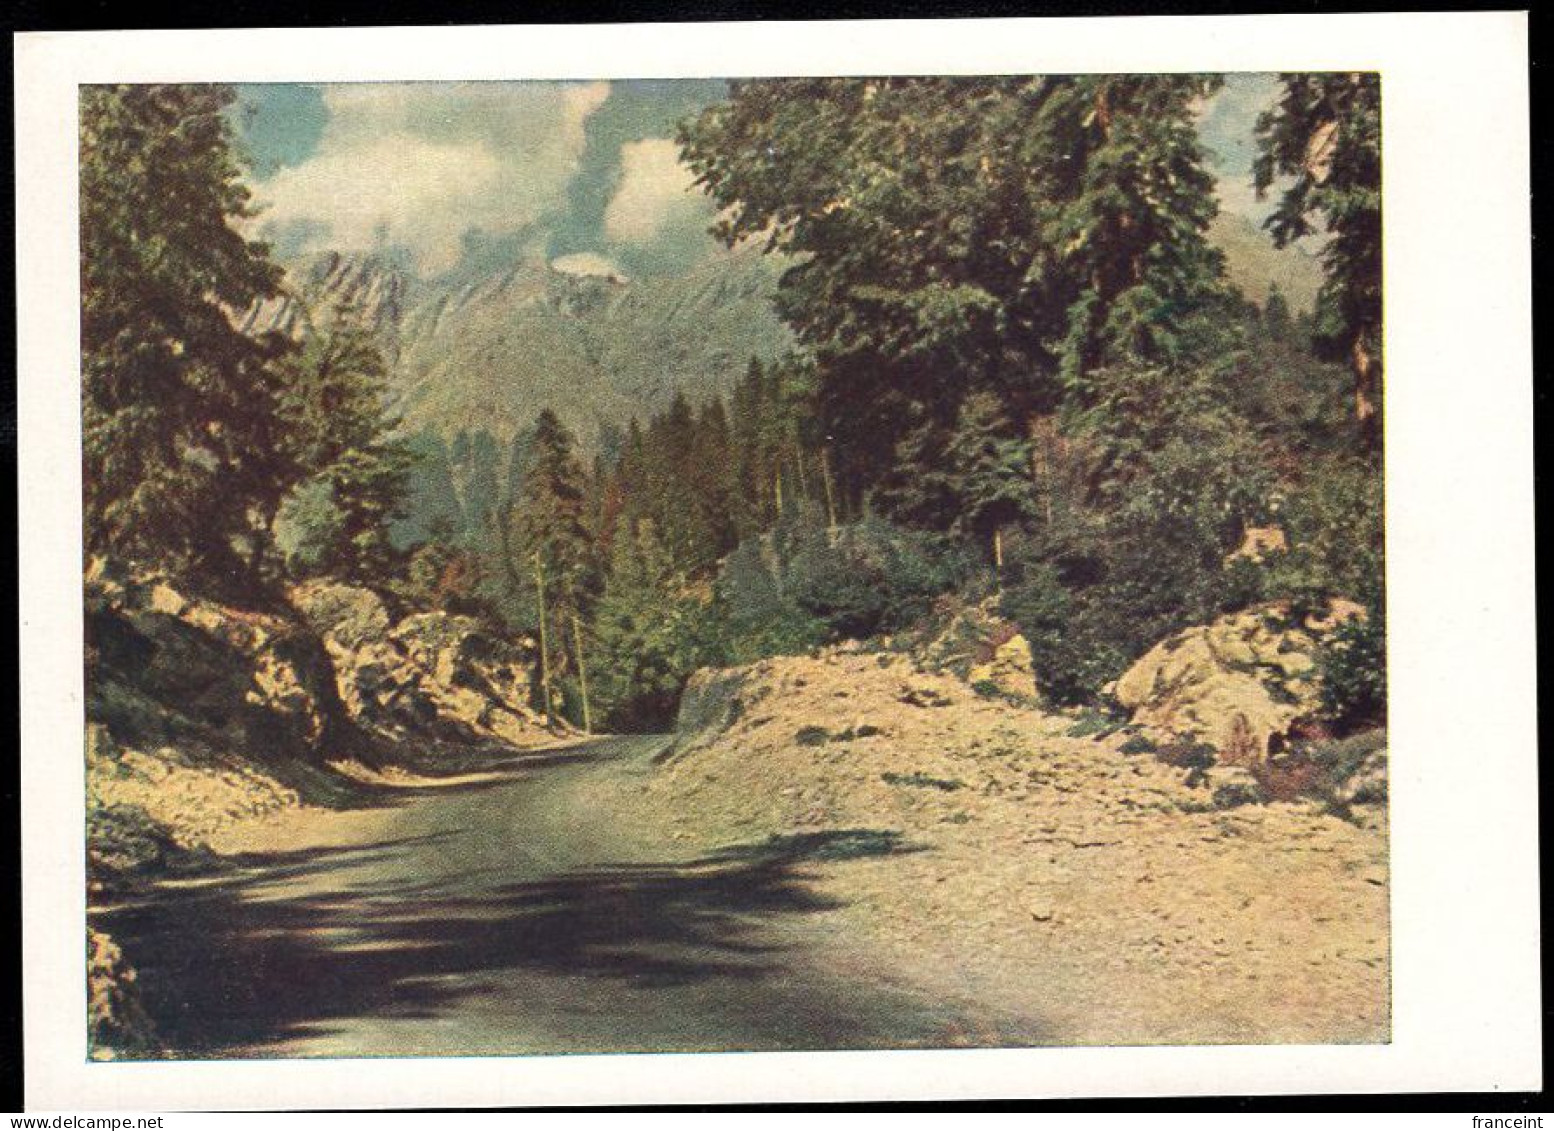 RUSSIA(1959) Road Through Ai-Petri (Crimea). 25 Kop Illustrated Postal Card. One Of The Windiest Places In Crimea. - 1950-59